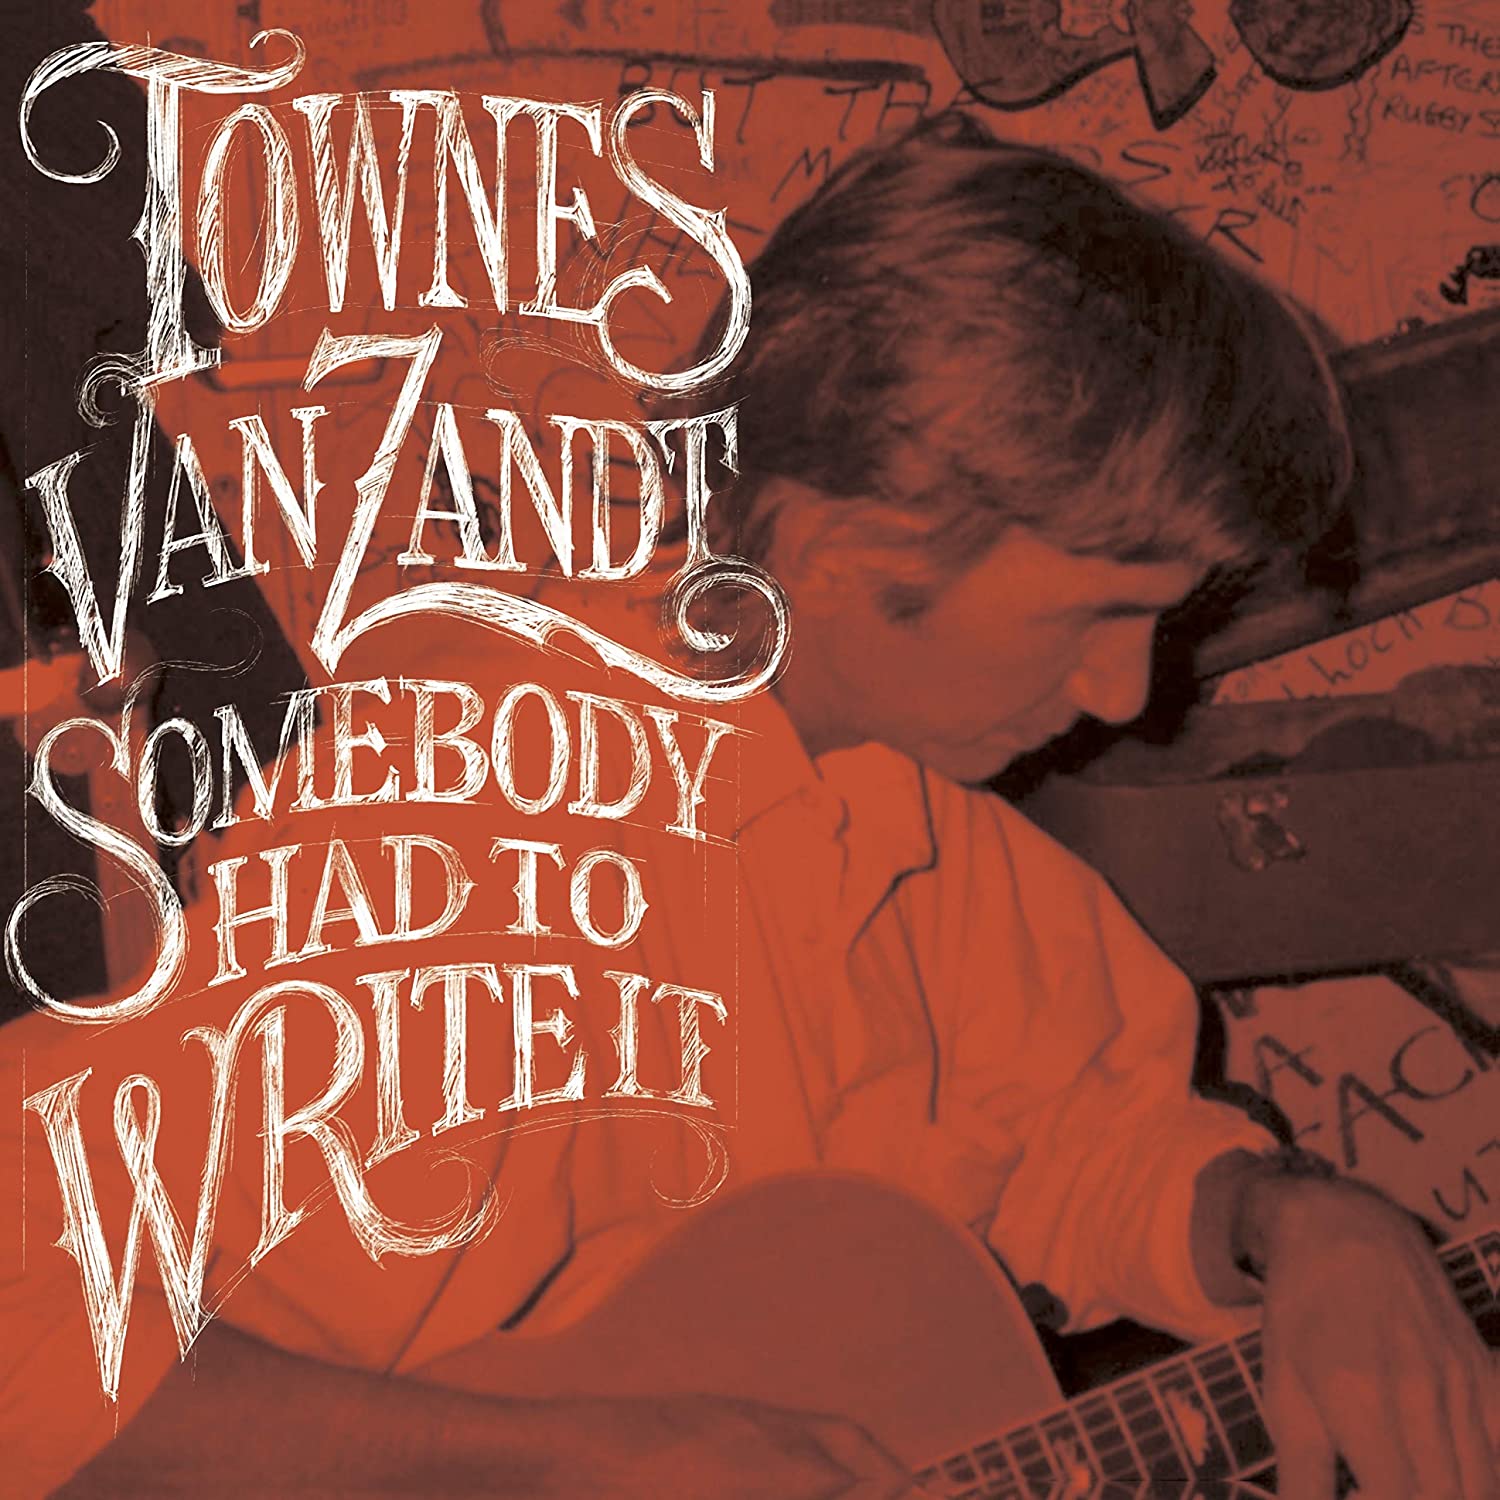 Townes Van Zandt - Somebody Had To Write It |  Vinyl LP | Townes Van Zandt - Somebody Had To Write It (LP) | Records on Vinyl